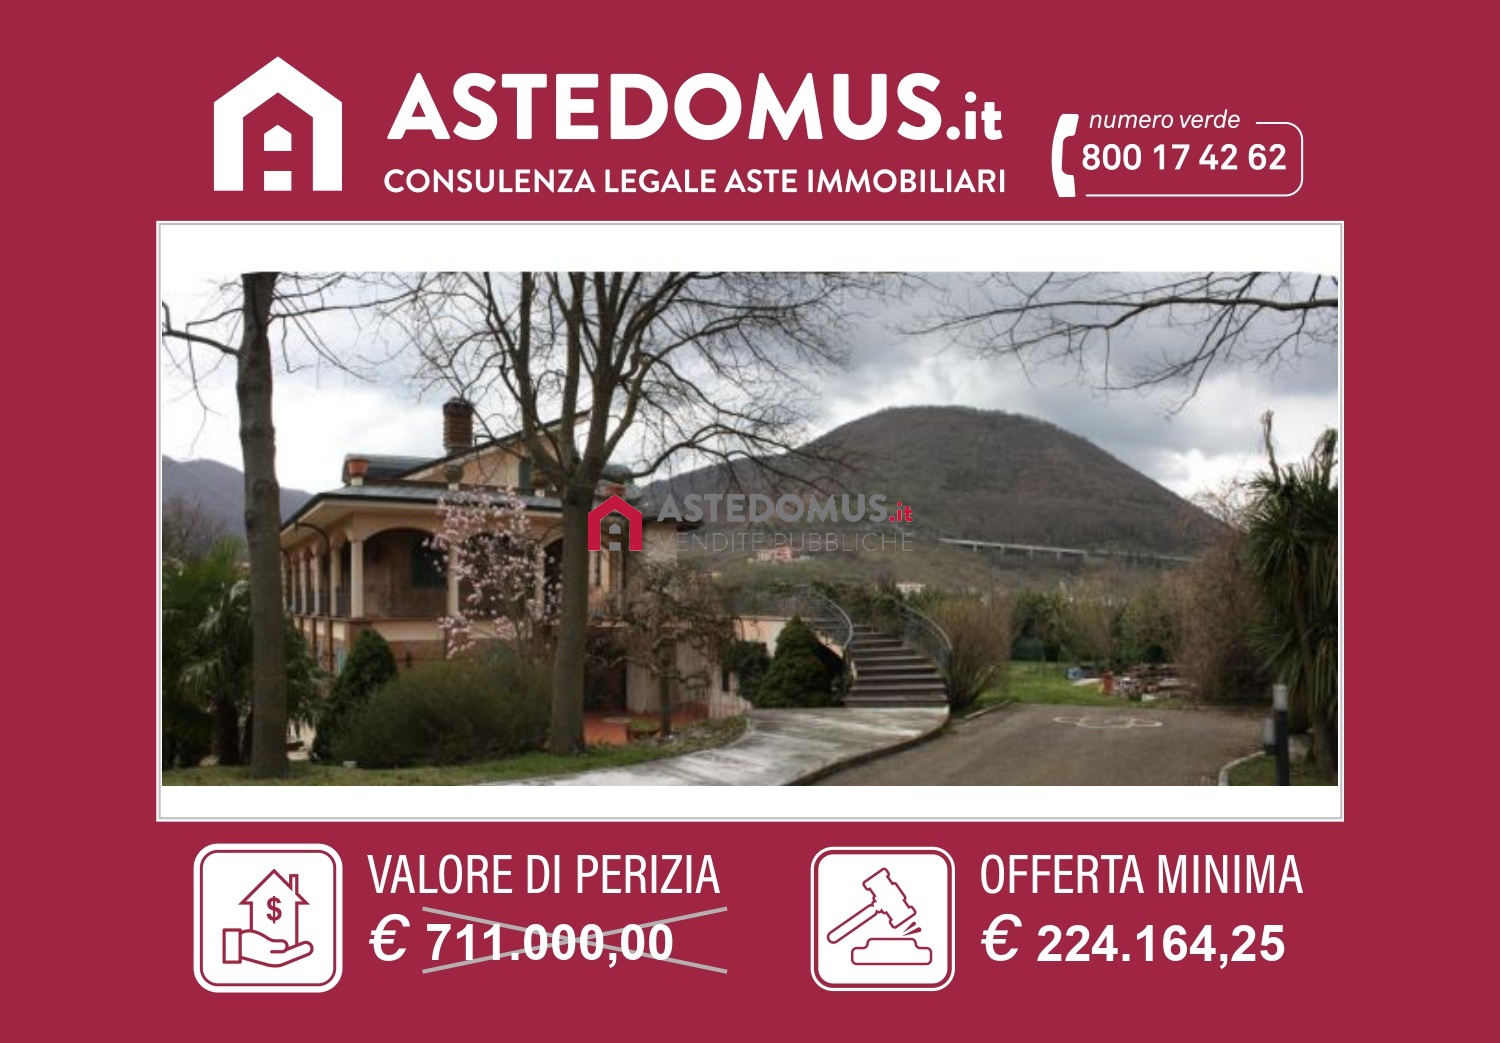 Villa classe A1 a Monteforte Irpino